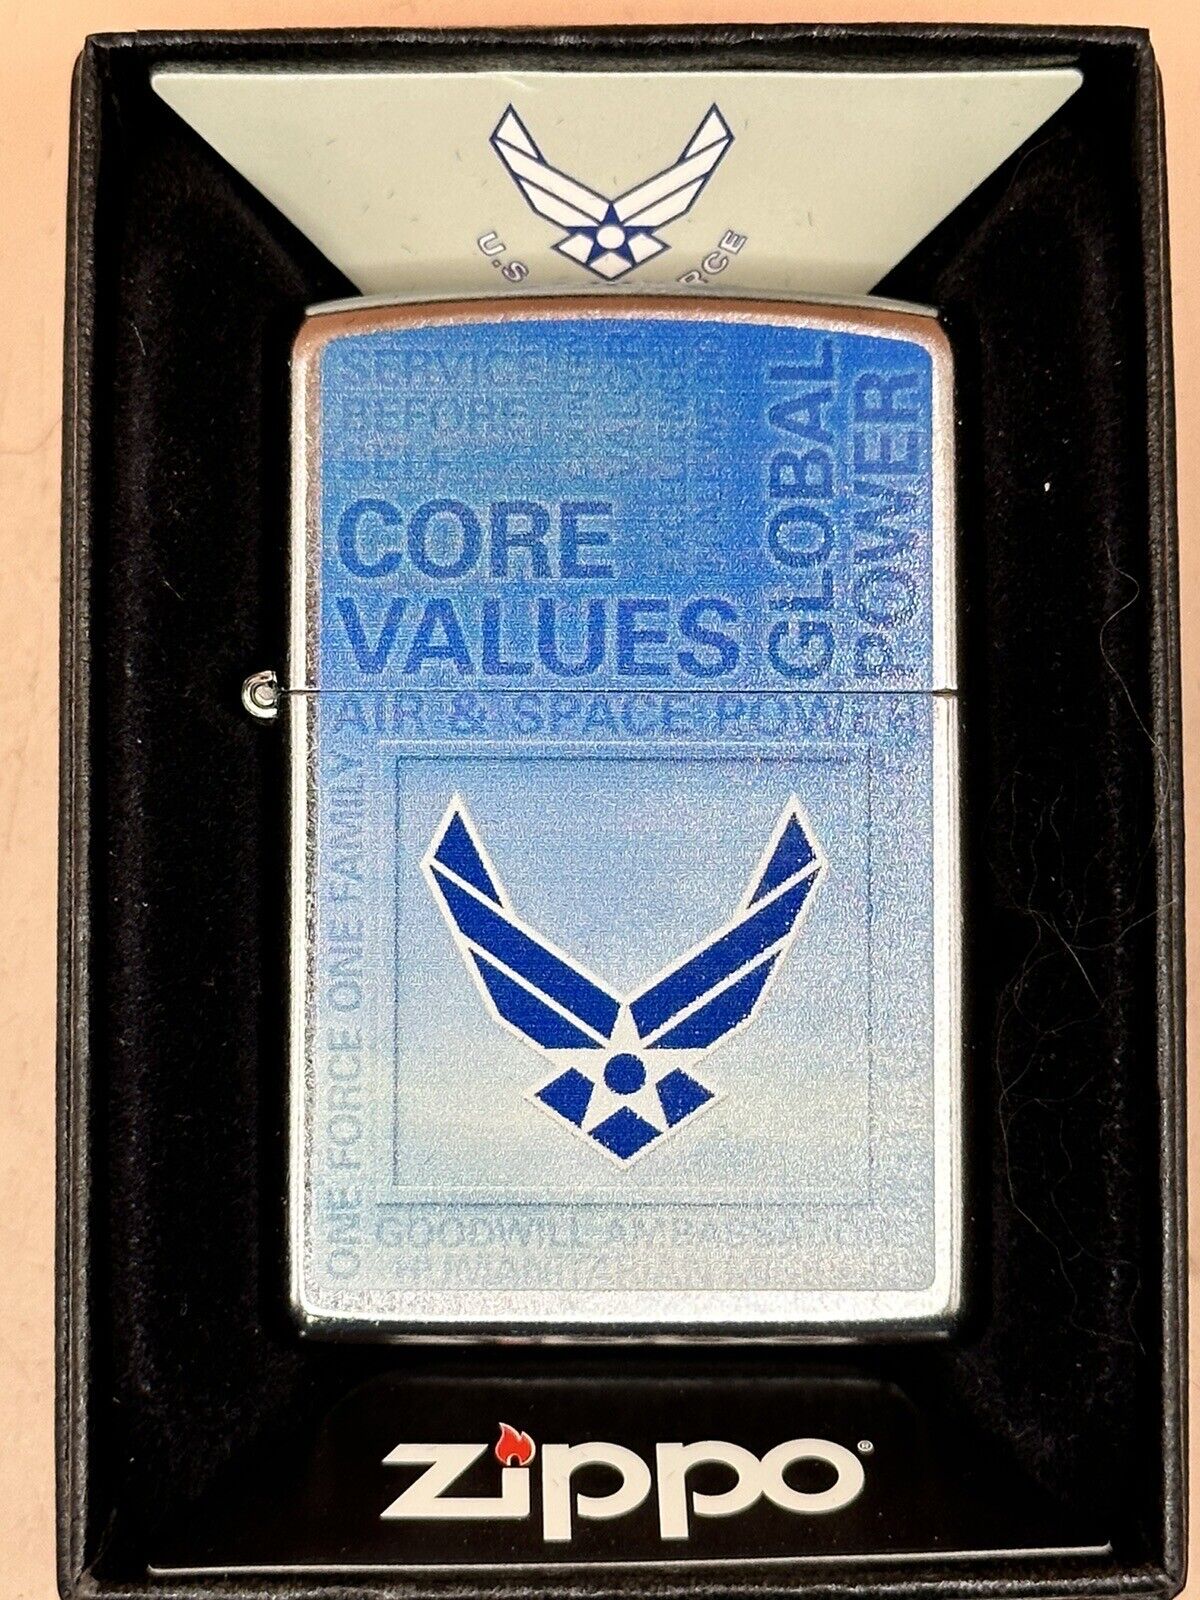 Vintage 2014 US Air Force Core Values Chrome Zippo Lighter